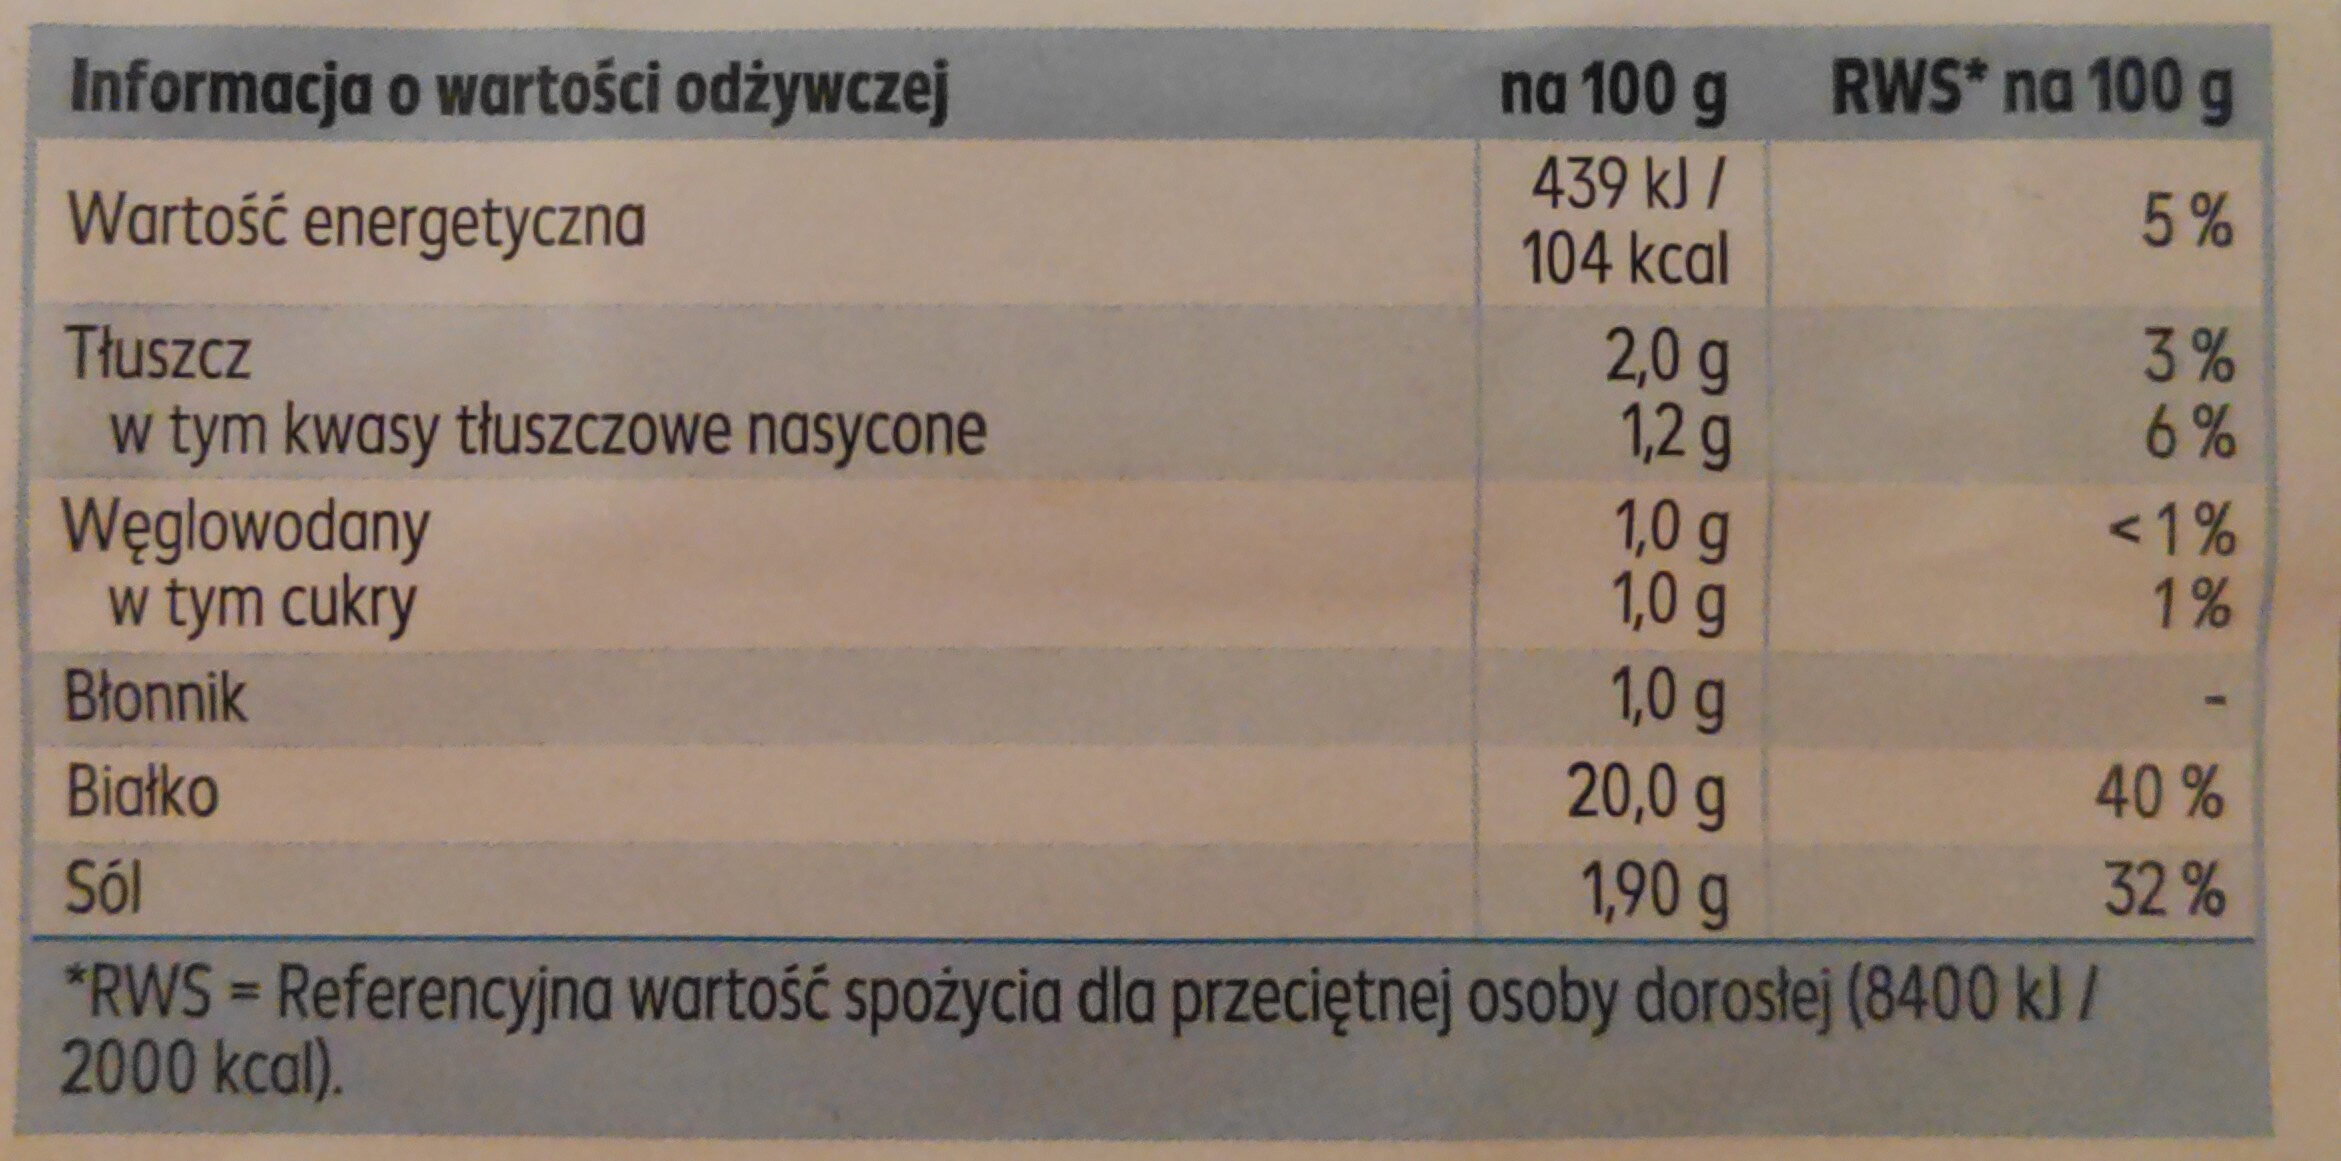 Koch-schinken - Wartości odżywcze - pl